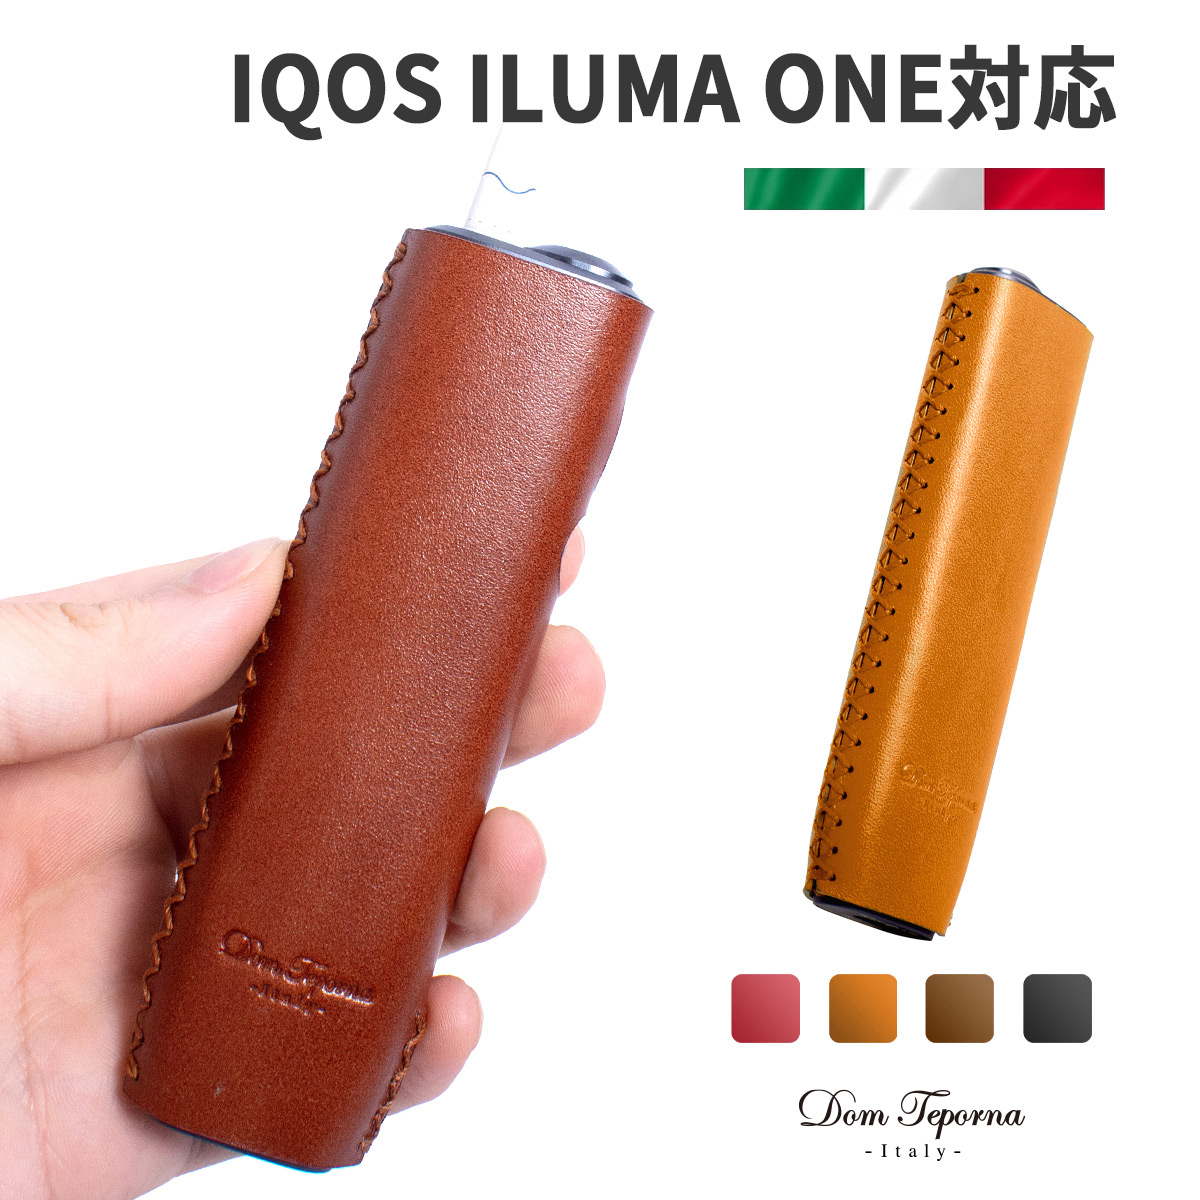 アイコス イルマ ワン 対応 ケース IQOS ILUMA ONE 対応 ケース スリーブ イタリアンレザー 革 小さい 電子たばこ カバー 本体  DomTeporna Italy ブランド :iqd7351:All Right Leather 通販 